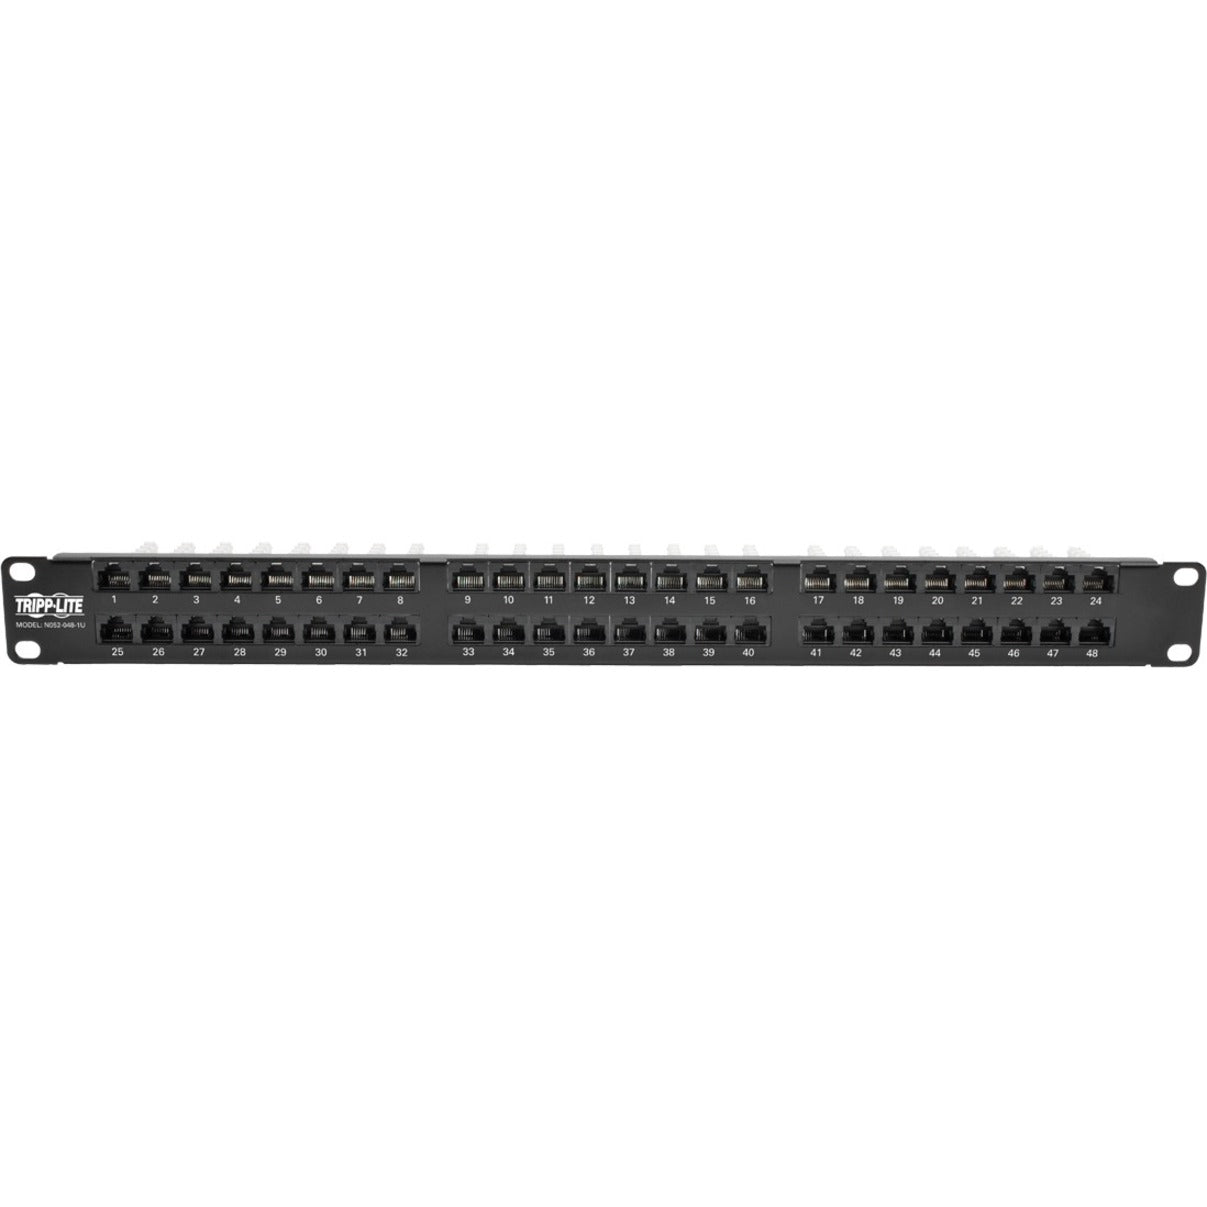 Tripp Lite N052-048-1U 48-Port 1U Rack-Mount High-Density Patch Panel TAA Compliant Lifetime Warranty